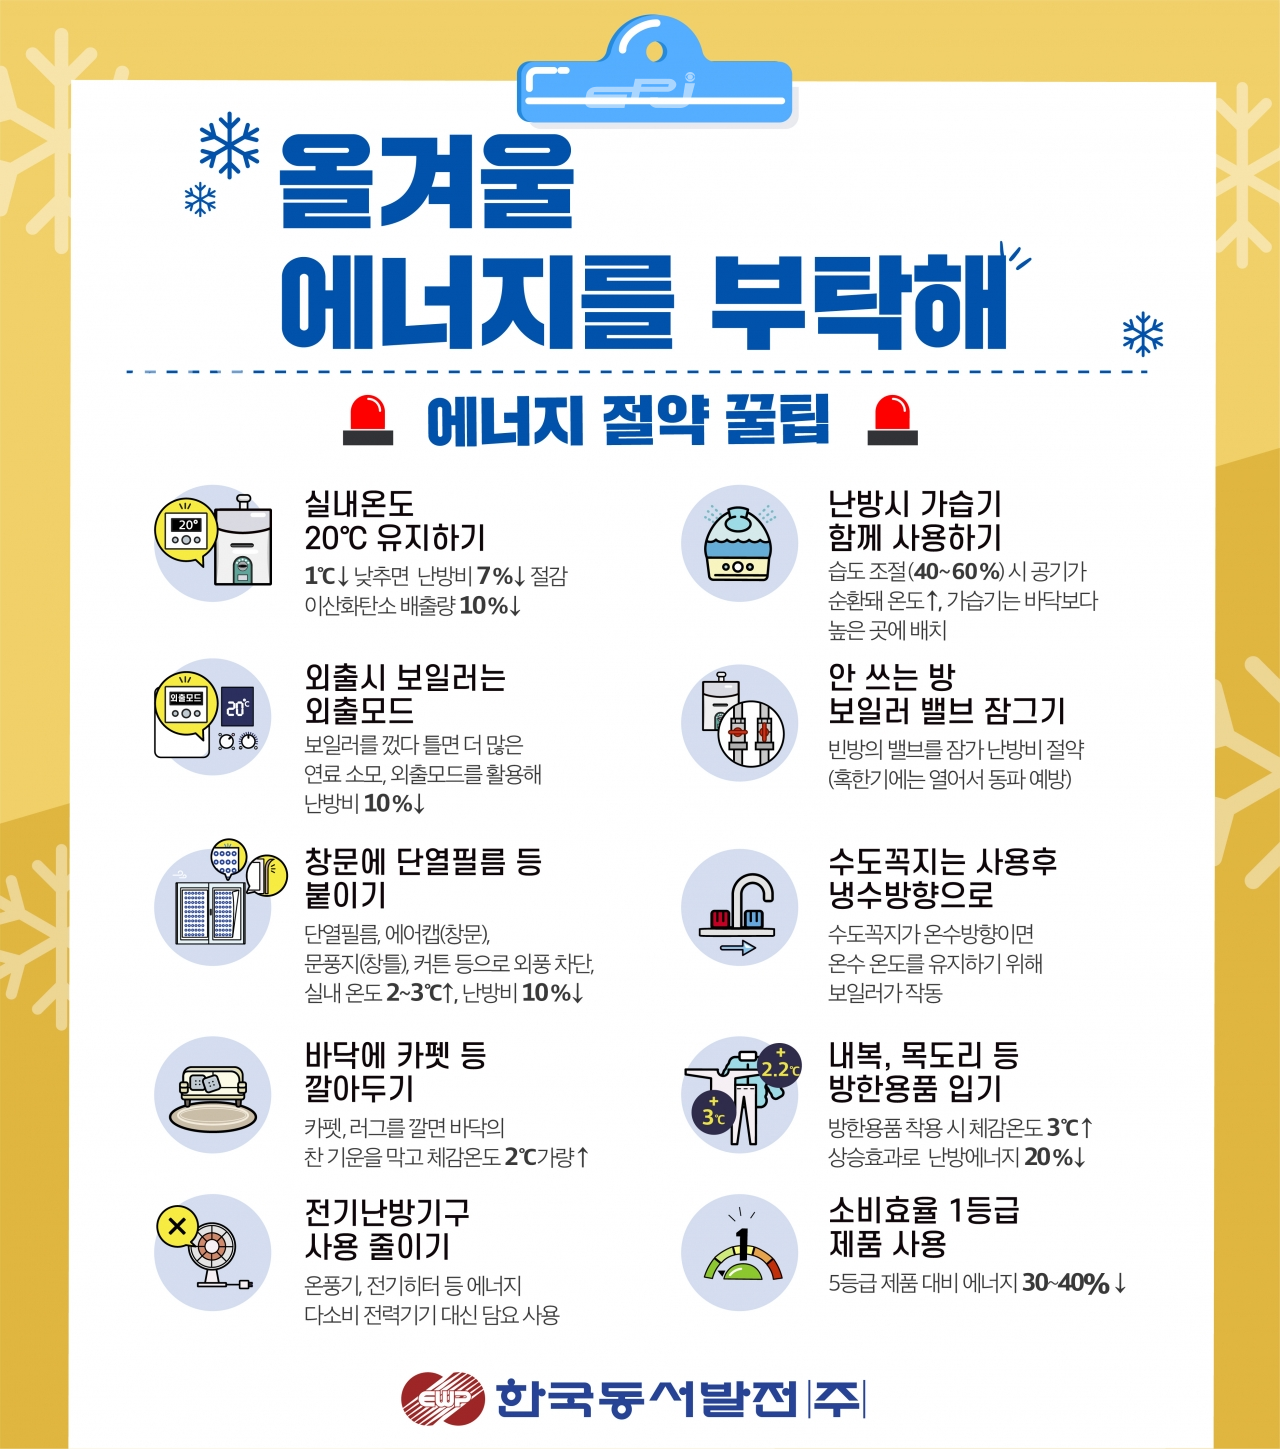 한국동서발전이 제작한 겨울철 에너지절약 캠페인 포스터